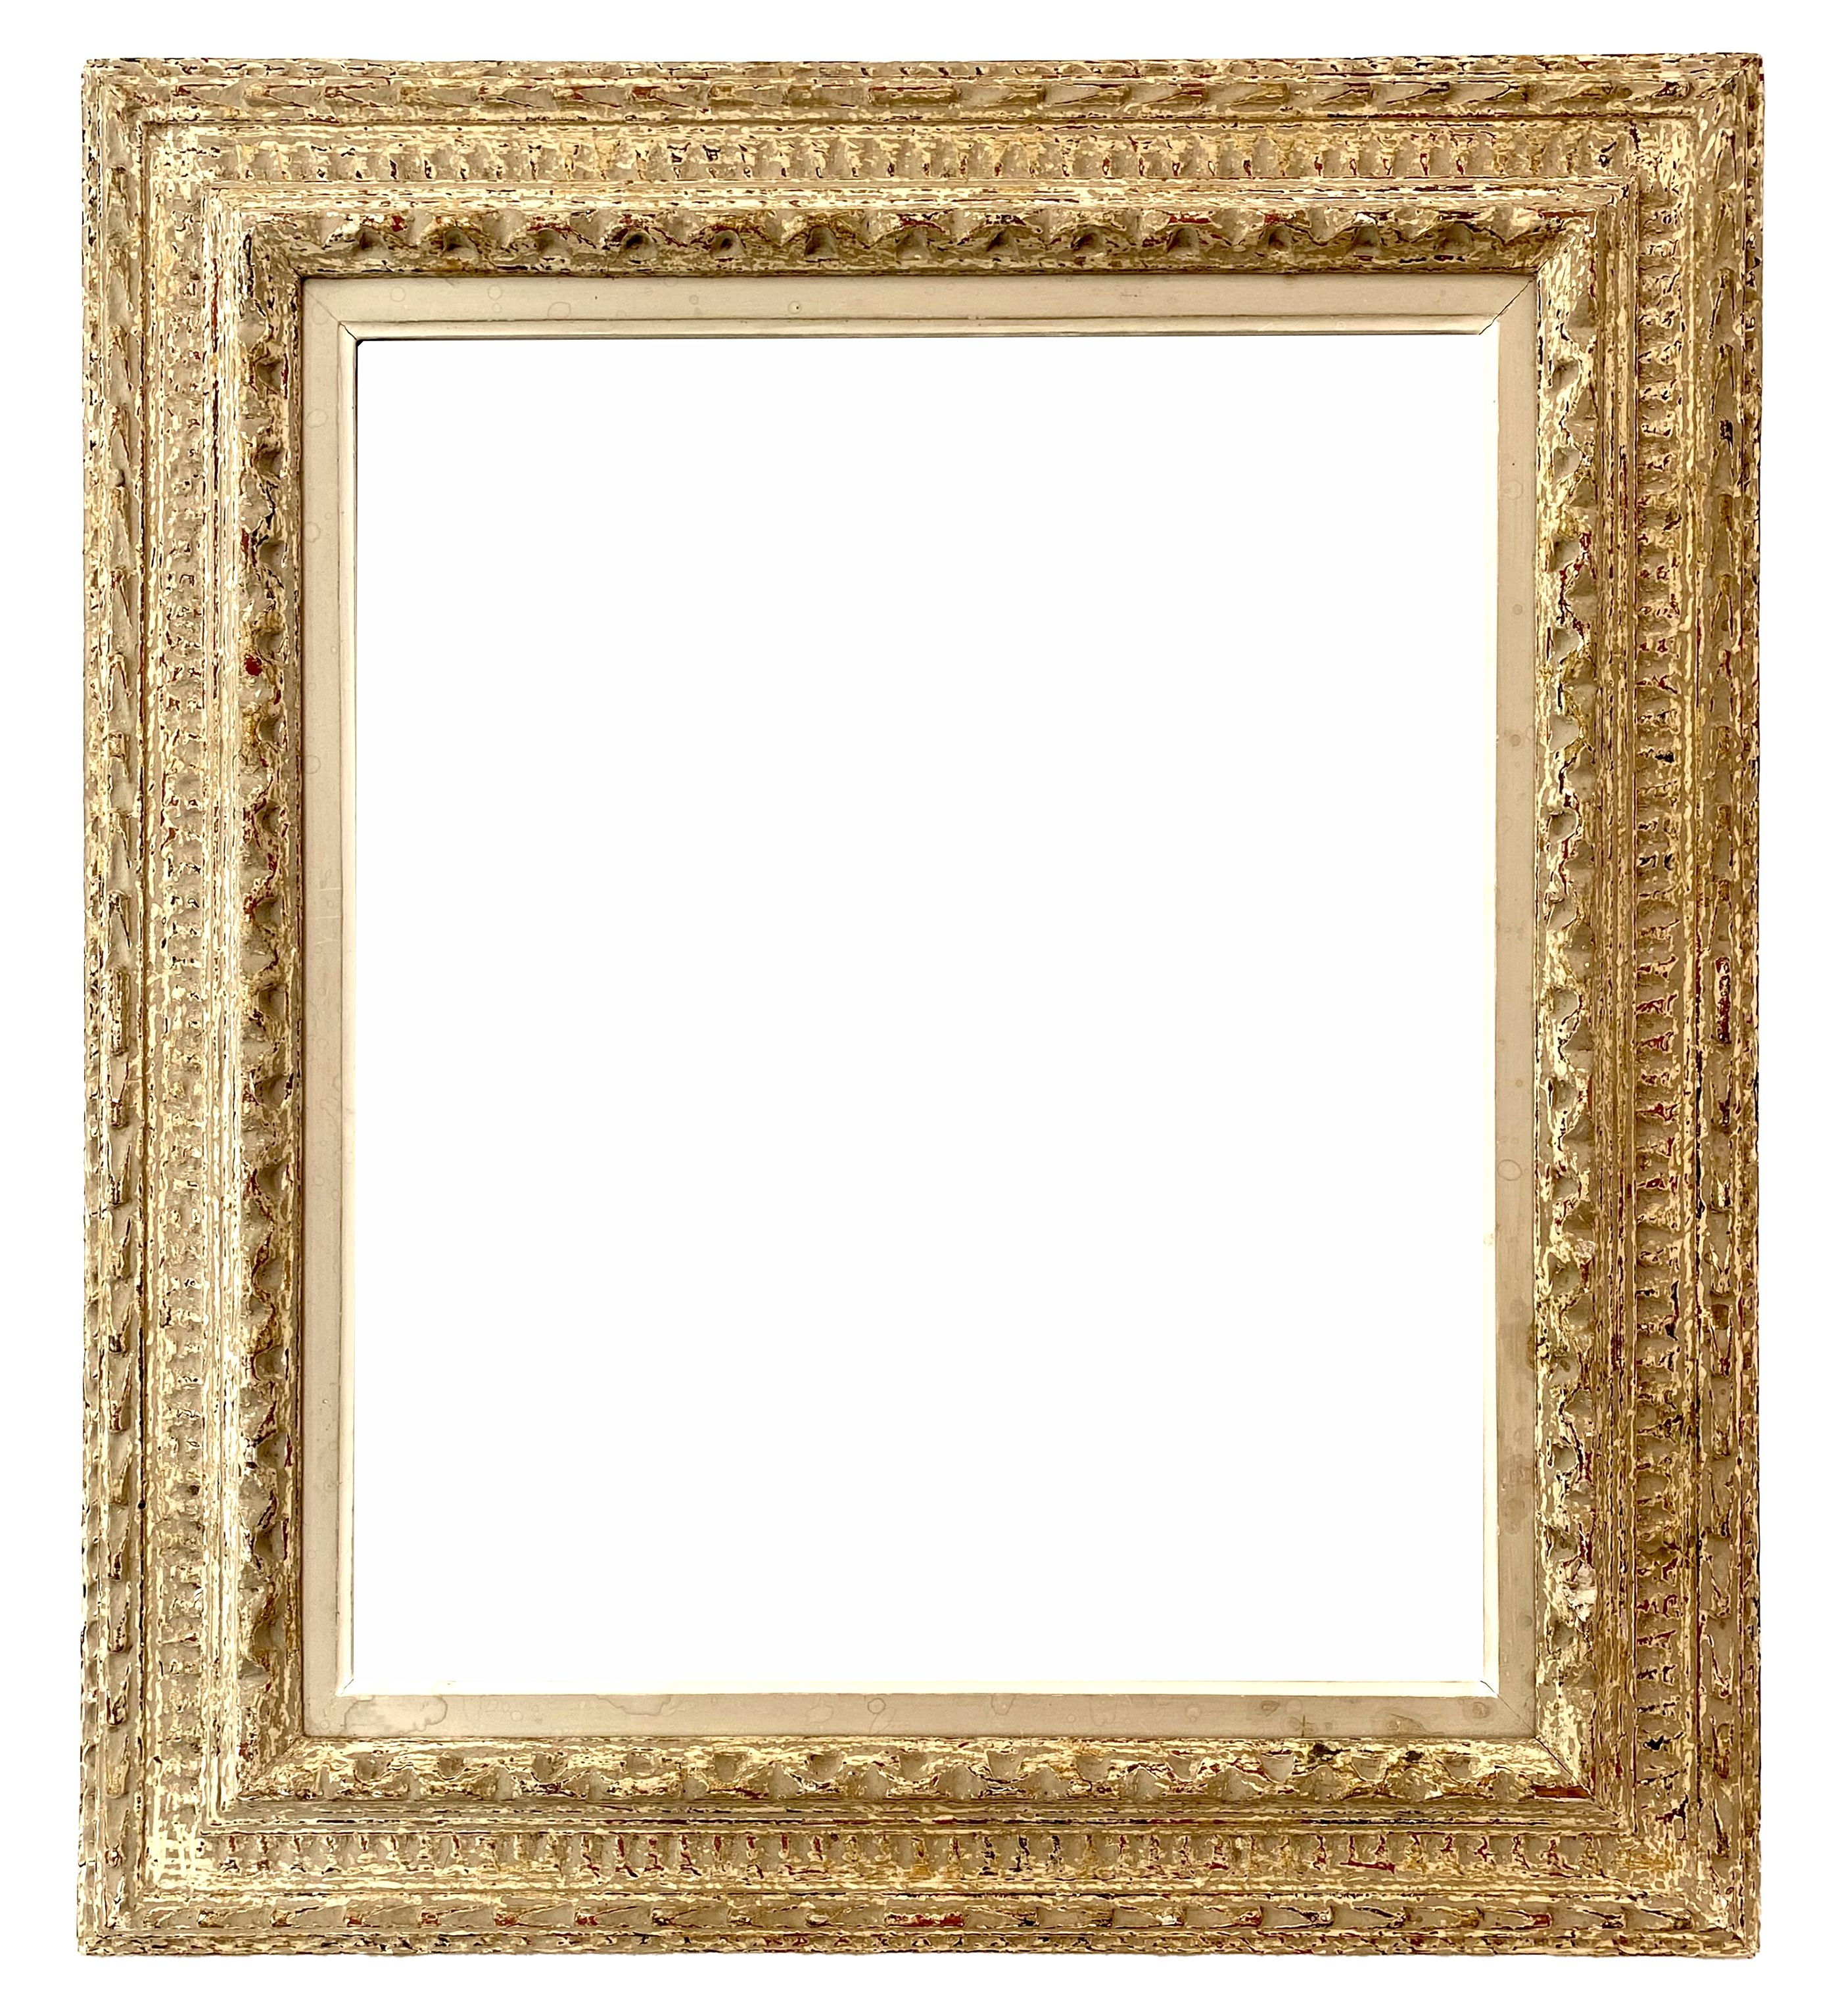 Montparnasse frame - 55.50 X 46.20 - REF -1673